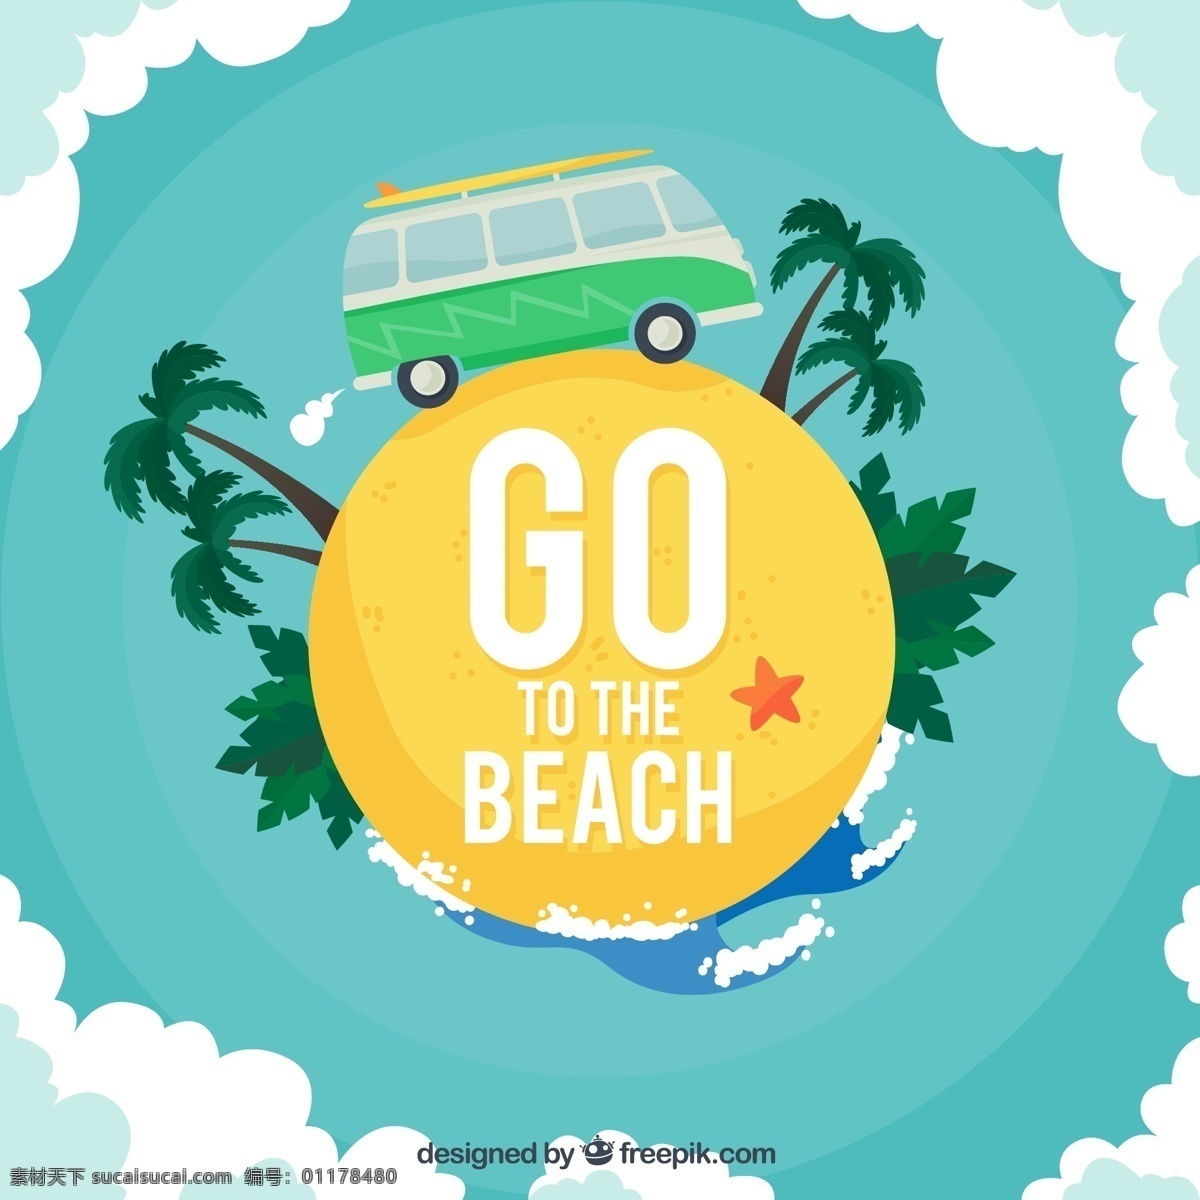 创意 夏季 沙滩 旅行 地球 插画 矢量 海浪 大海 云朵 海星 车 椰子树